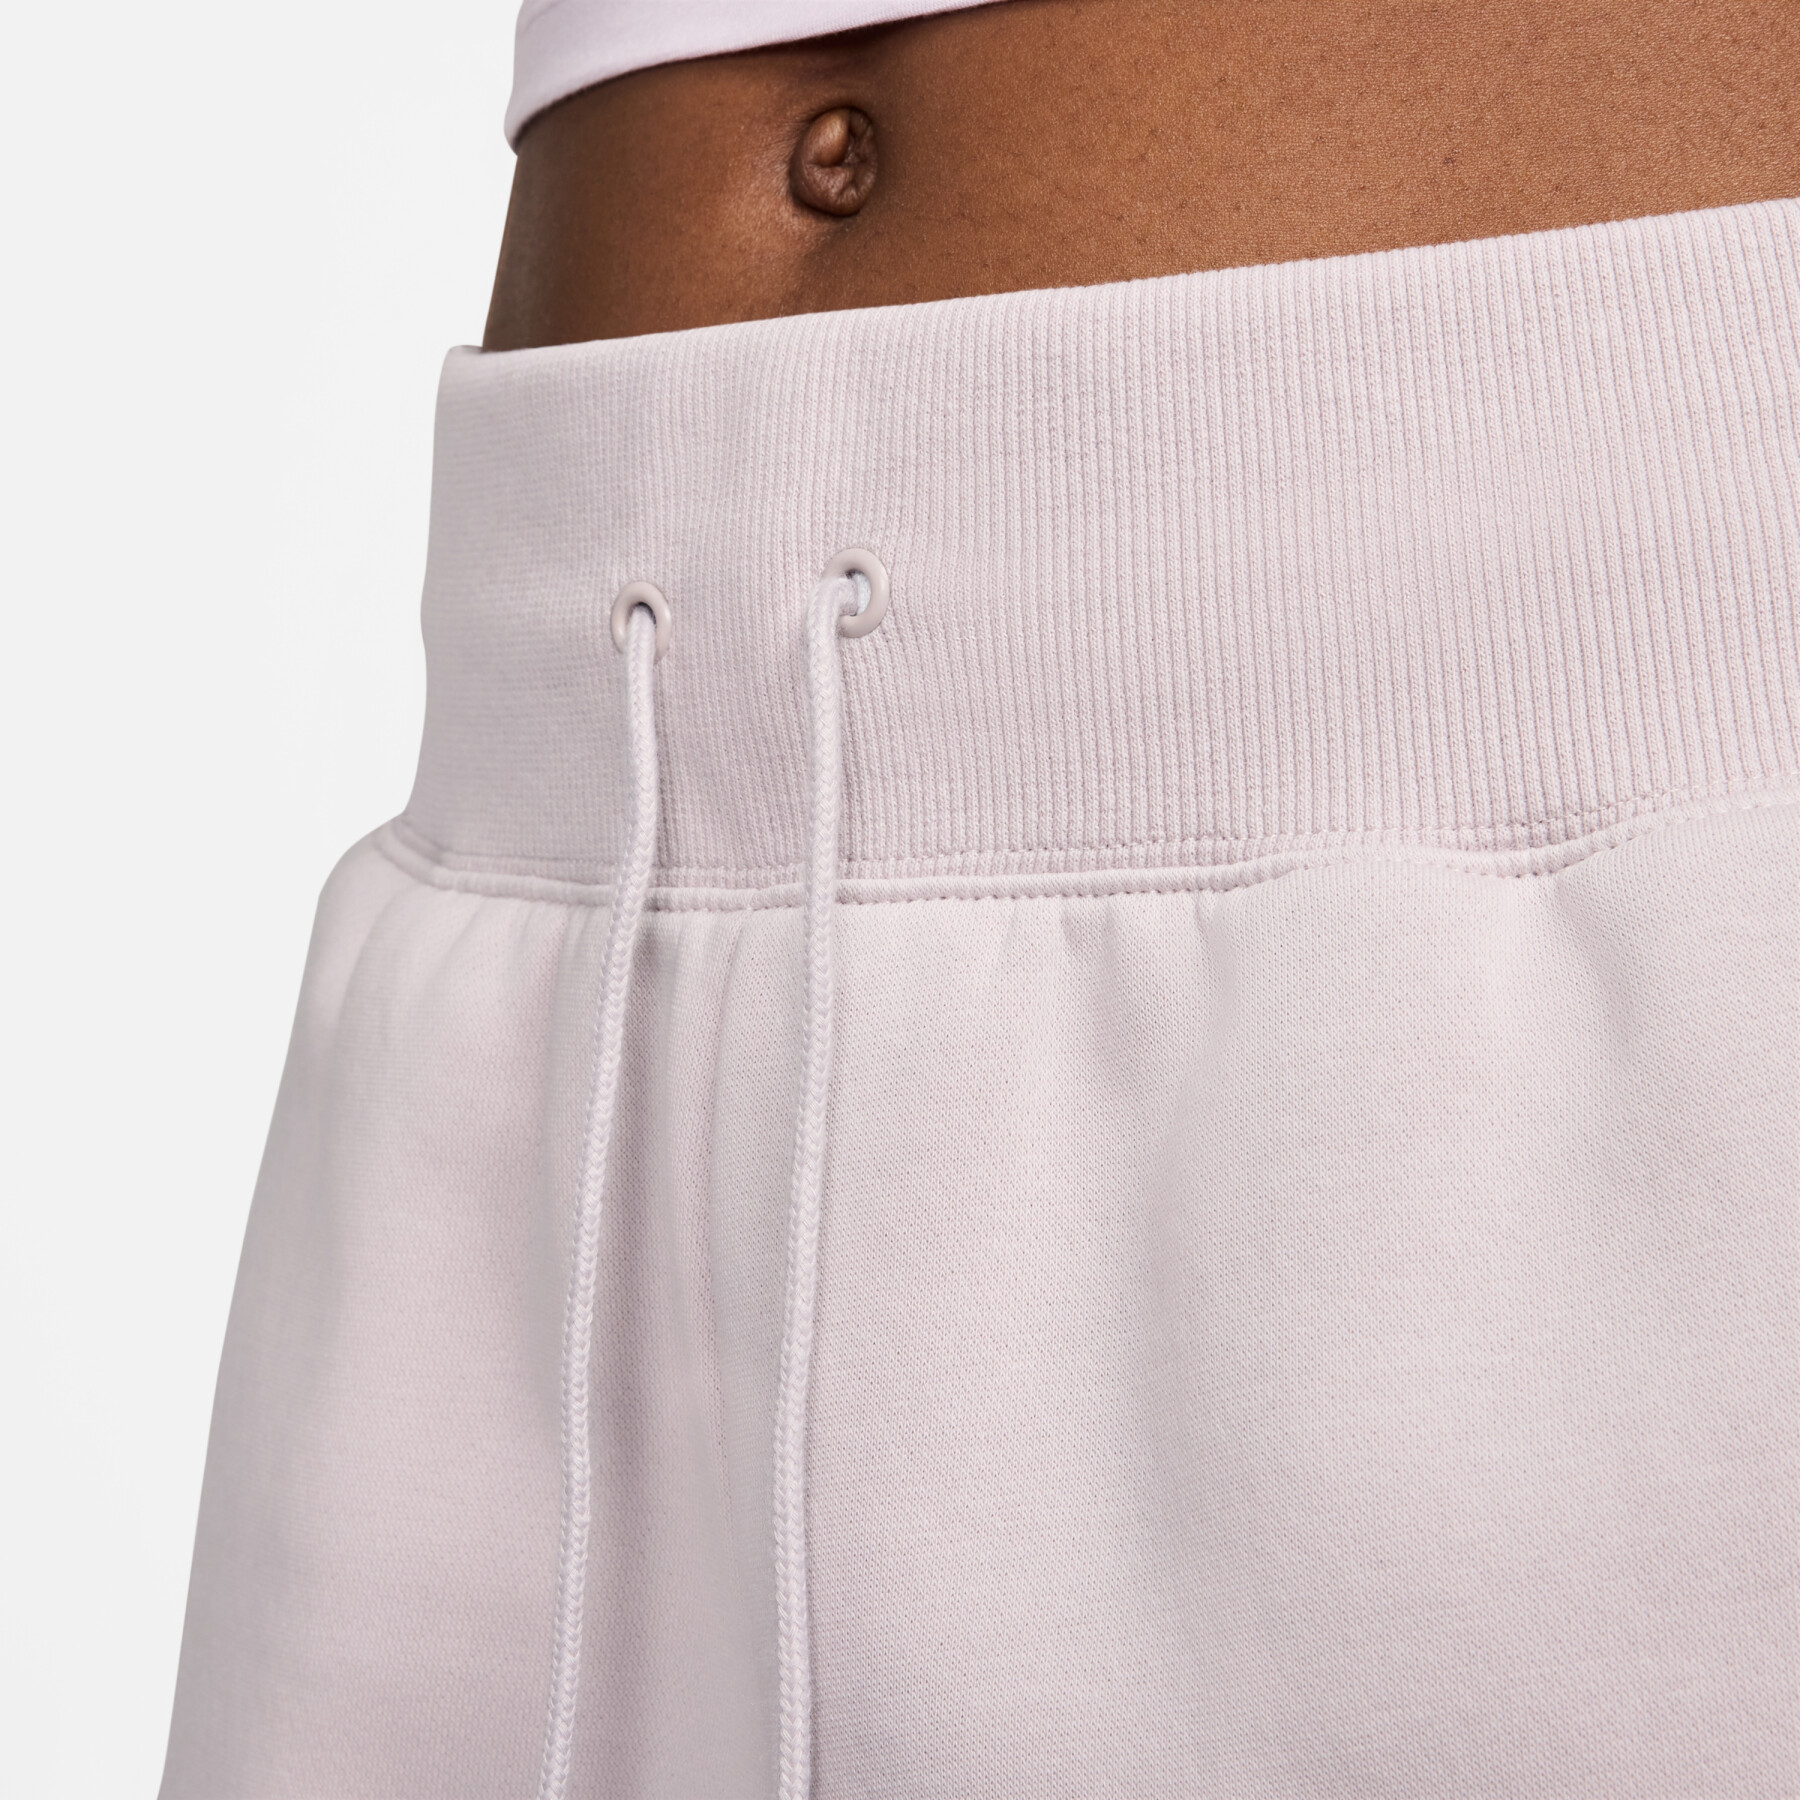 Shorts mit hohem Bund für Damen Nike Phoenix Fleece